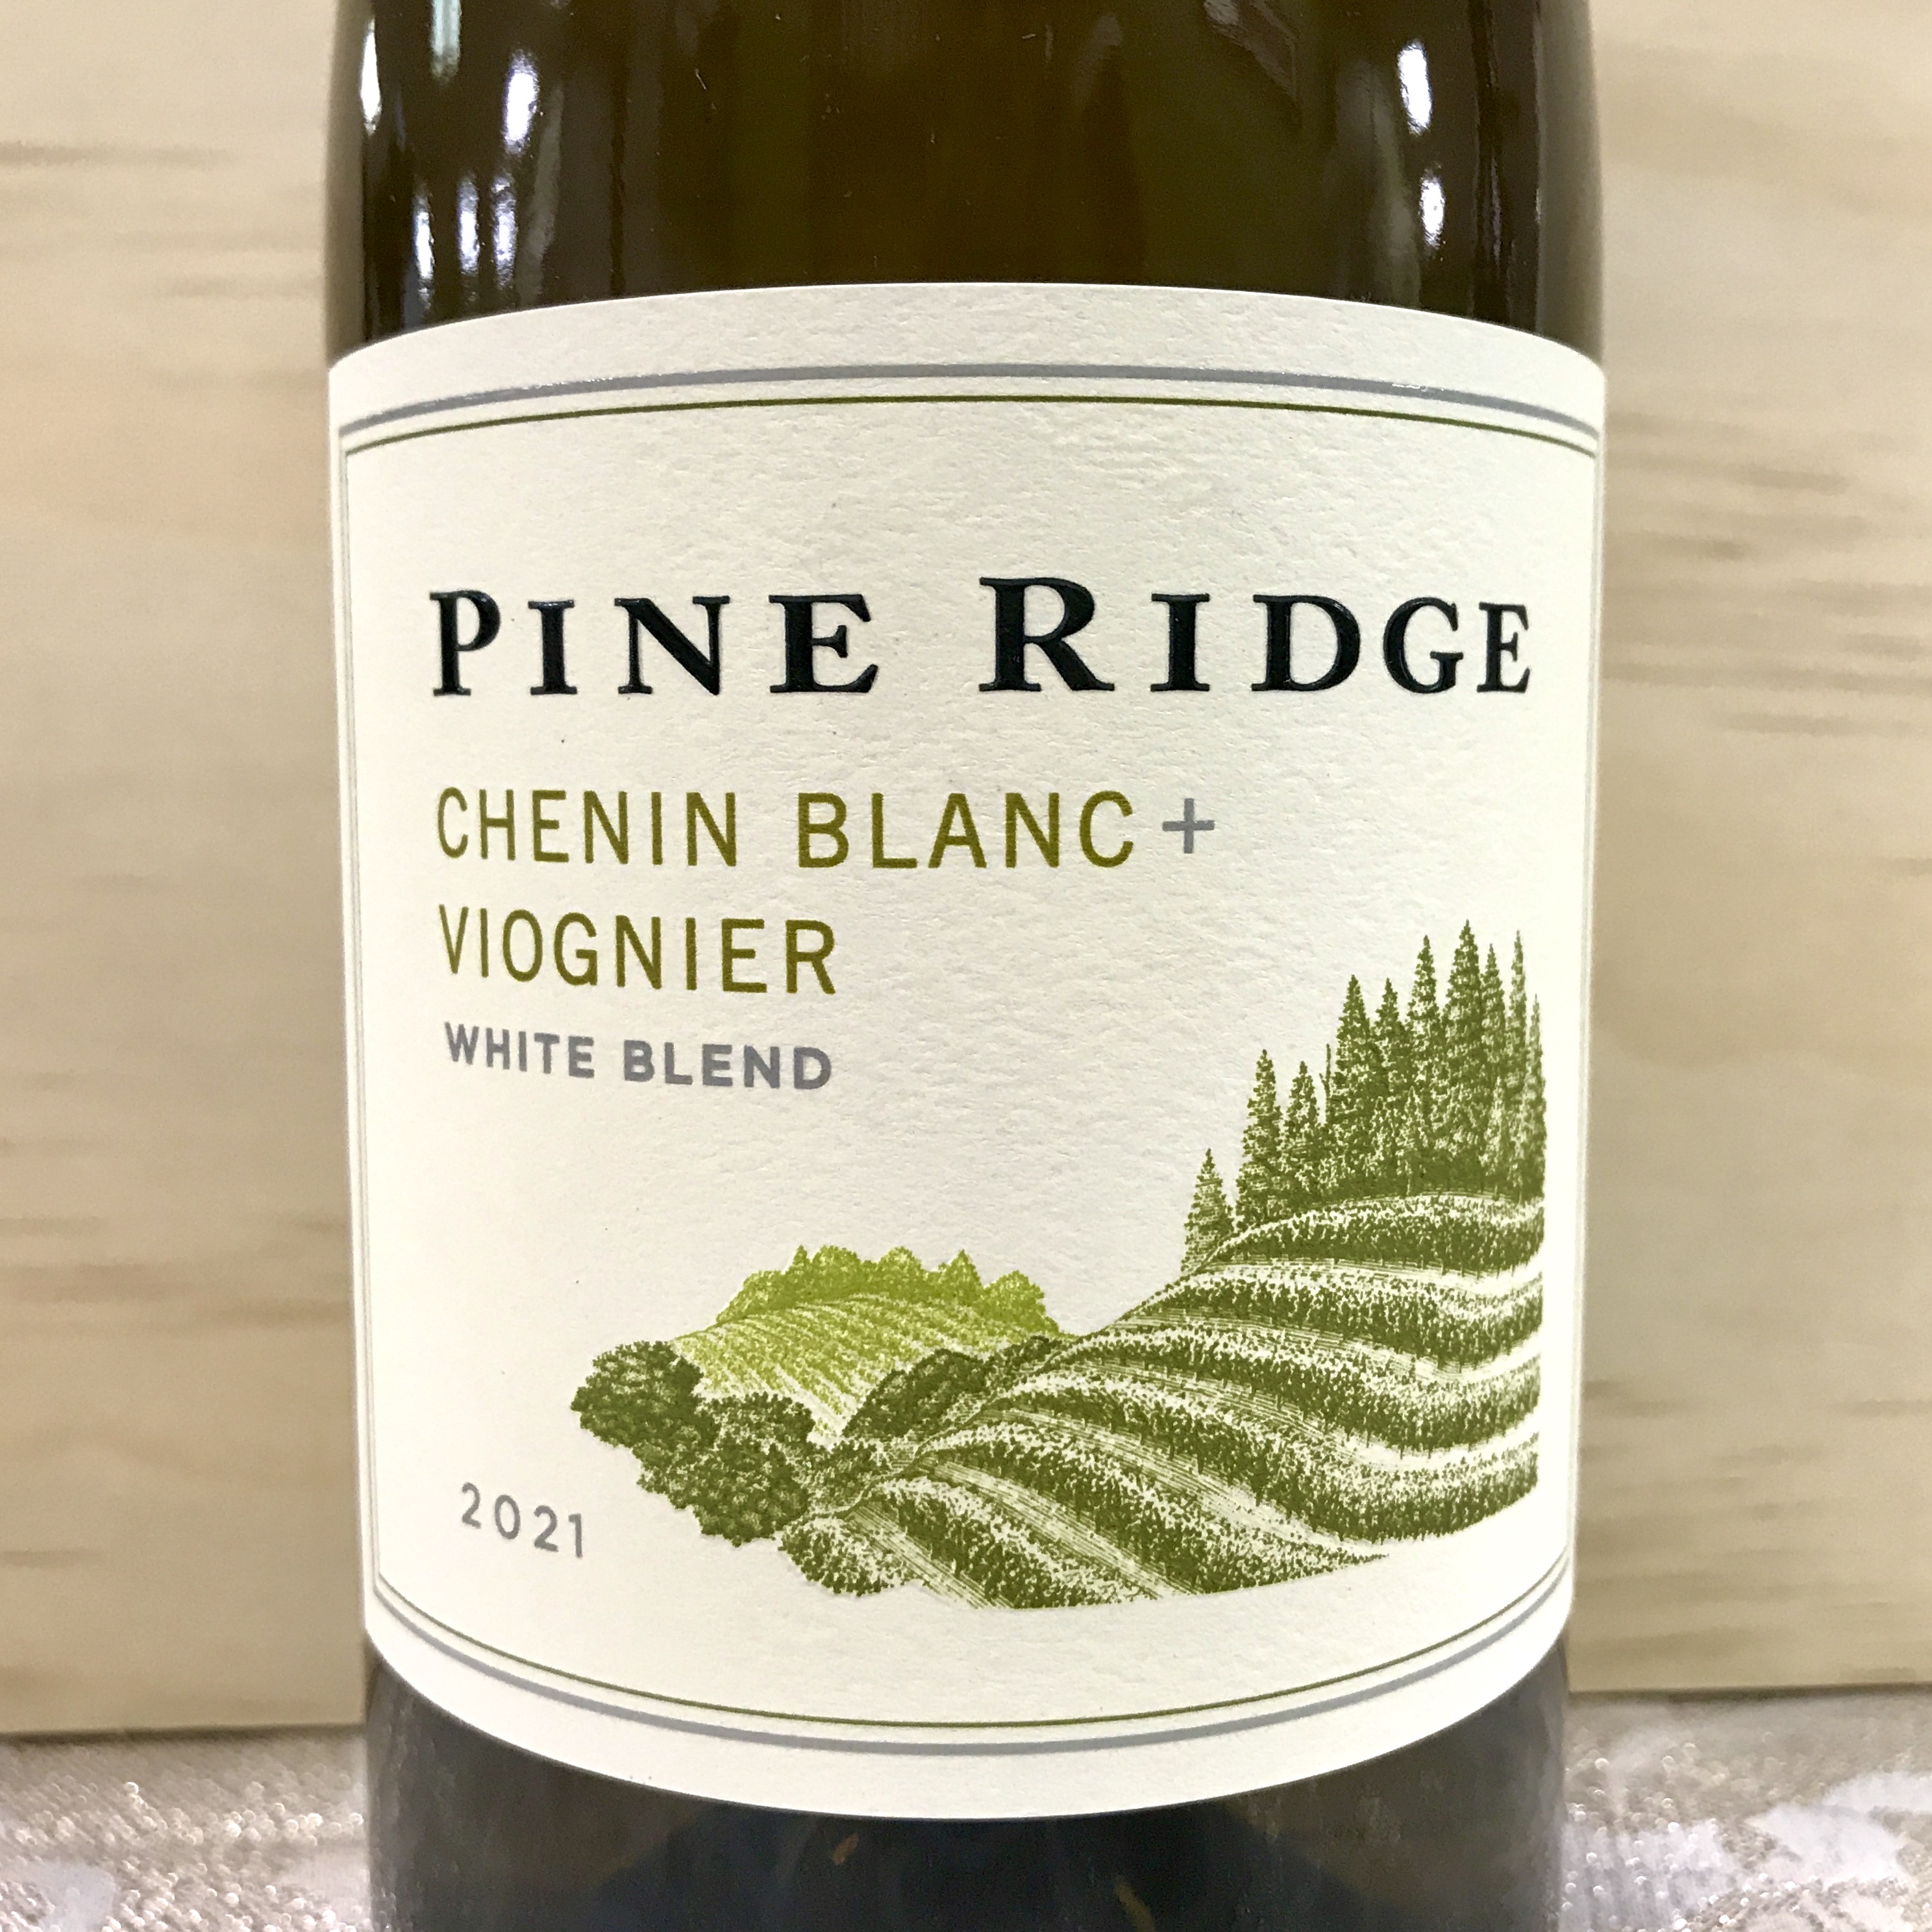 Pine Ridge Chenin Blanc  Viognier 2021 [white blend] - $15.99 : Rio Hill  Wine  Beer, Charlottesvilles premiere wine  beer retailer